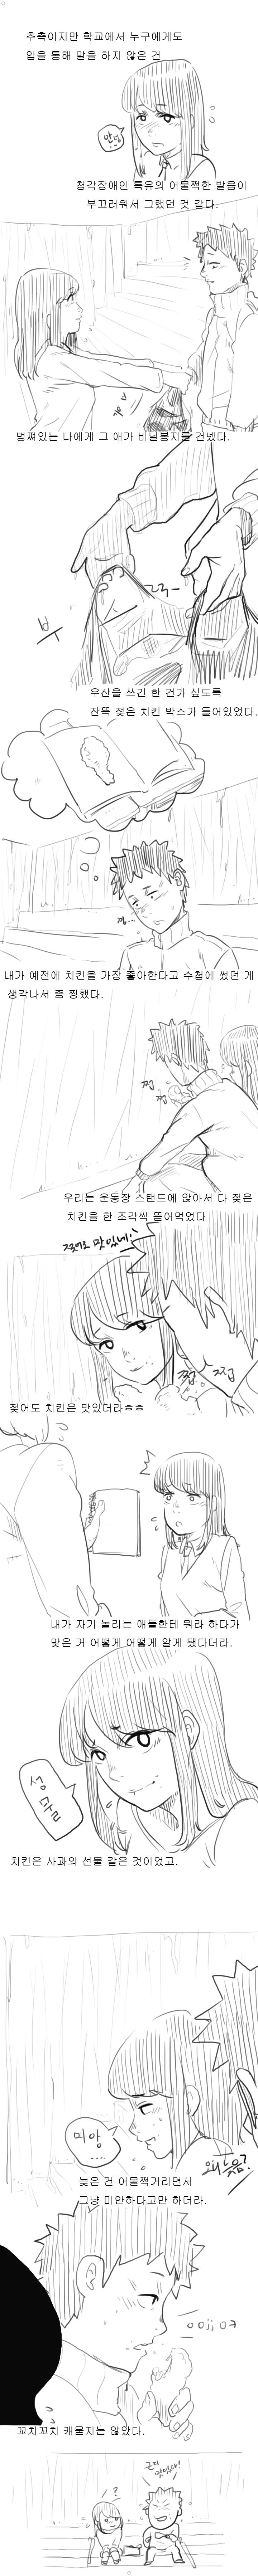 추억의 청각장애인 처자애랑 짝이었던 썰만화 ㅎㅎㅎㅎㅎ 이미지 #9